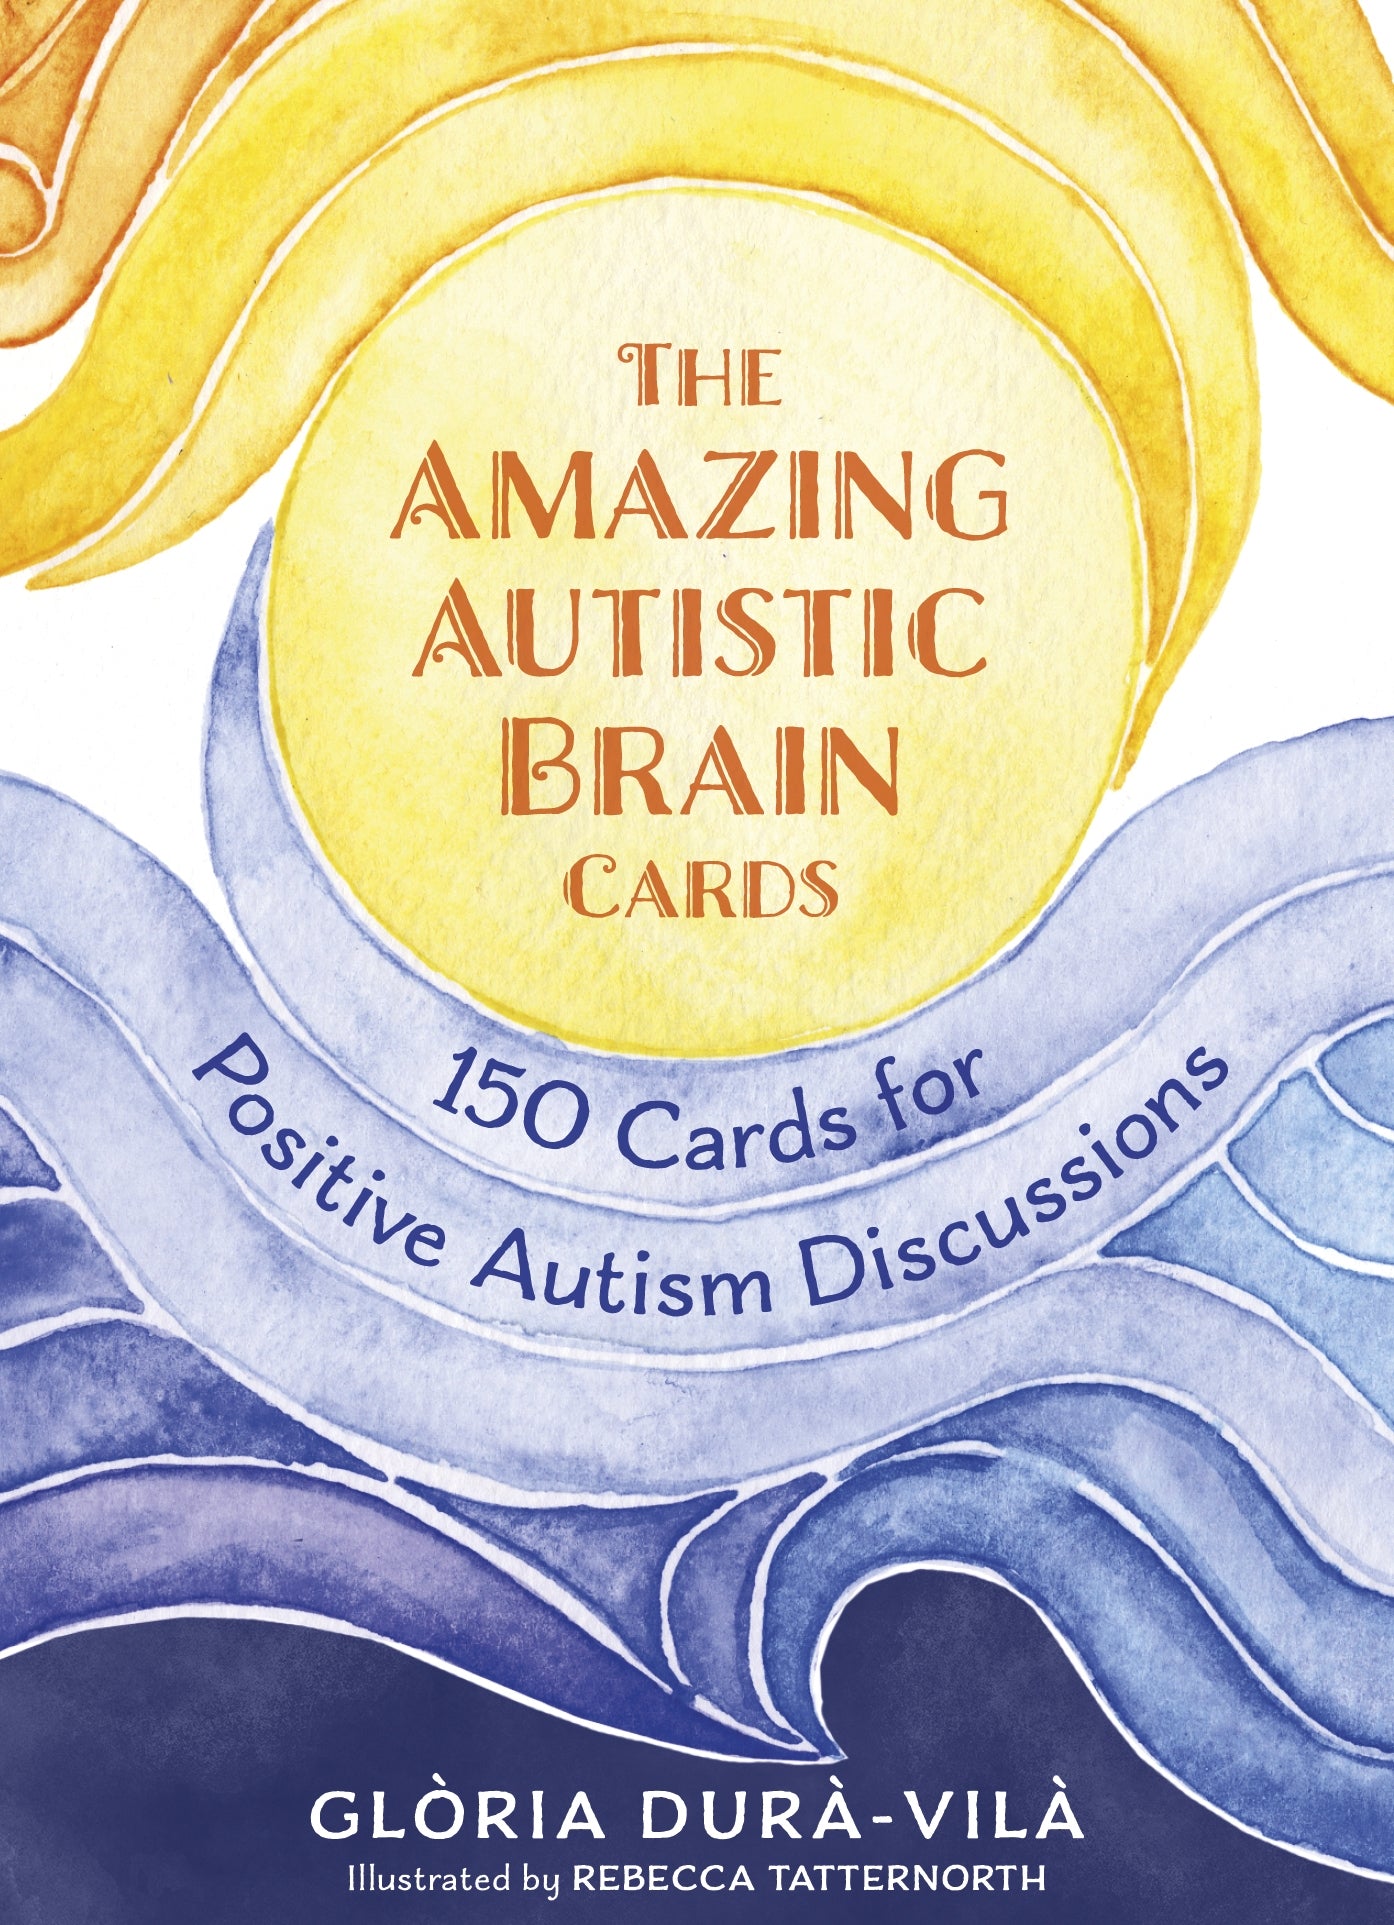 The Amazing Autistic Brain Cards by Glòria Durà-Vilà, Rebecca Tatternorth